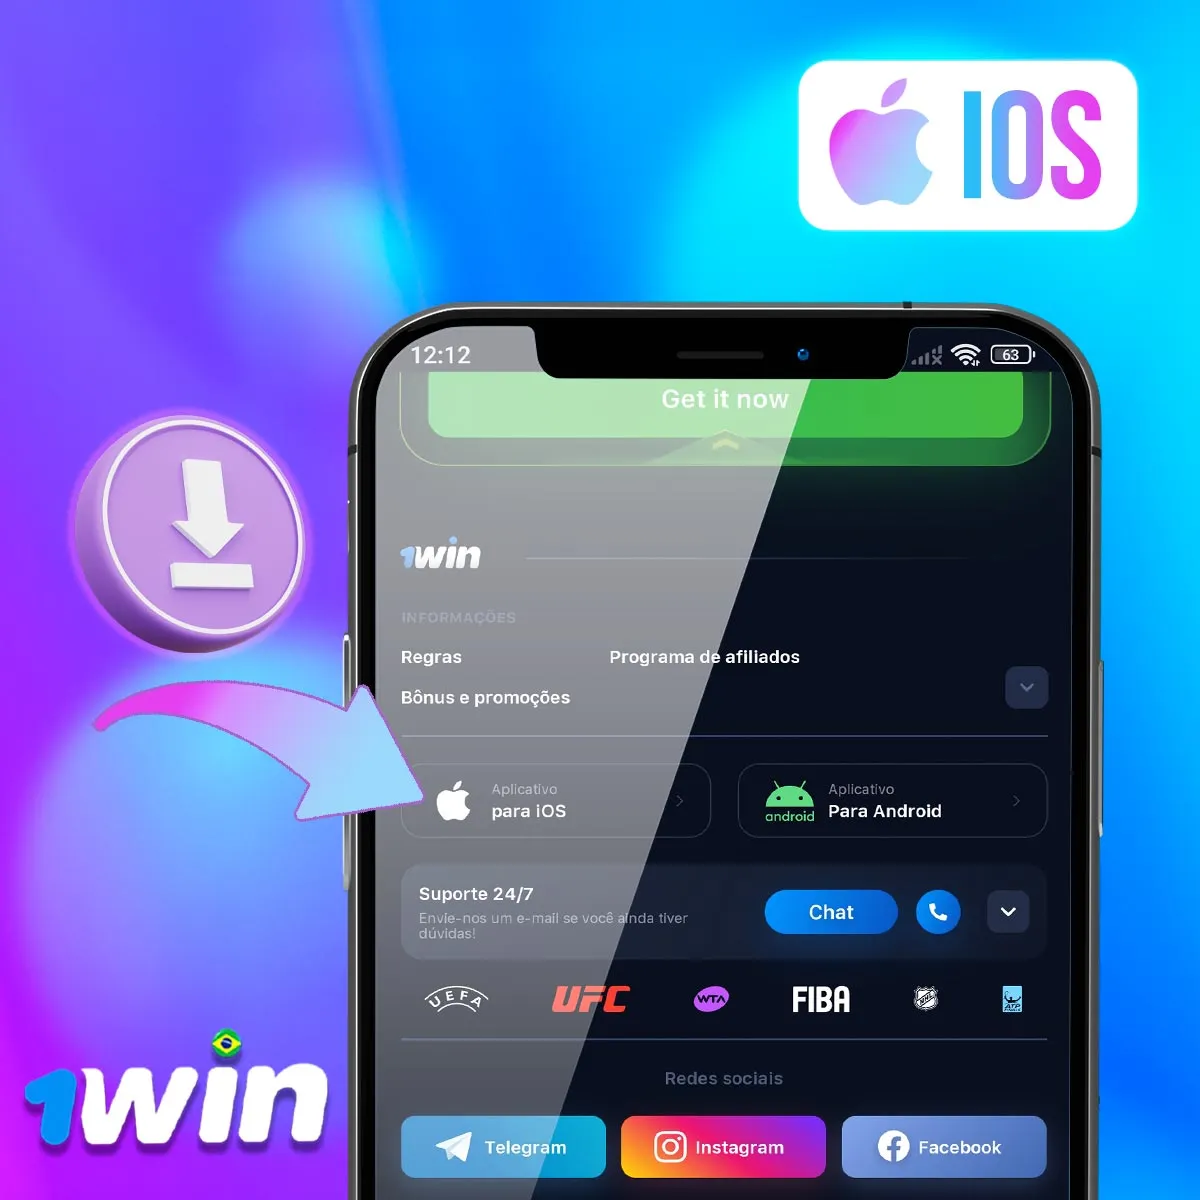 Aplicativo móvel para iOS da casa de apostas 1win no mercado brasileiro